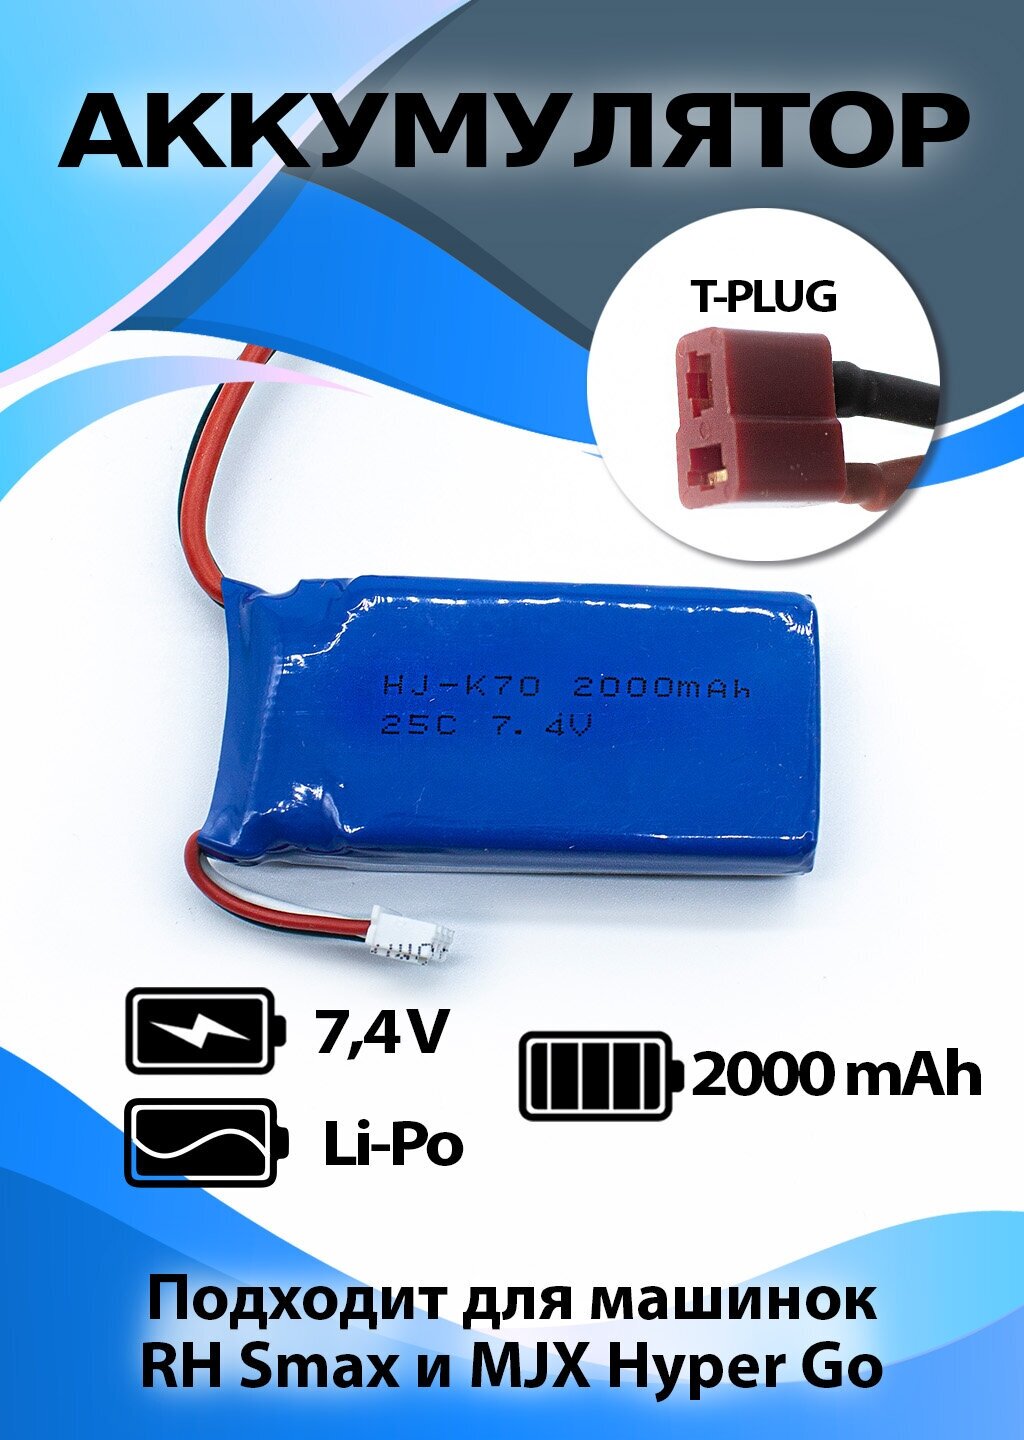 Аккумулятор для Remo Hobby S-Max повышенной емкости и токоотдачи Li-Po 7,4V 2000mAh разъем T-plug